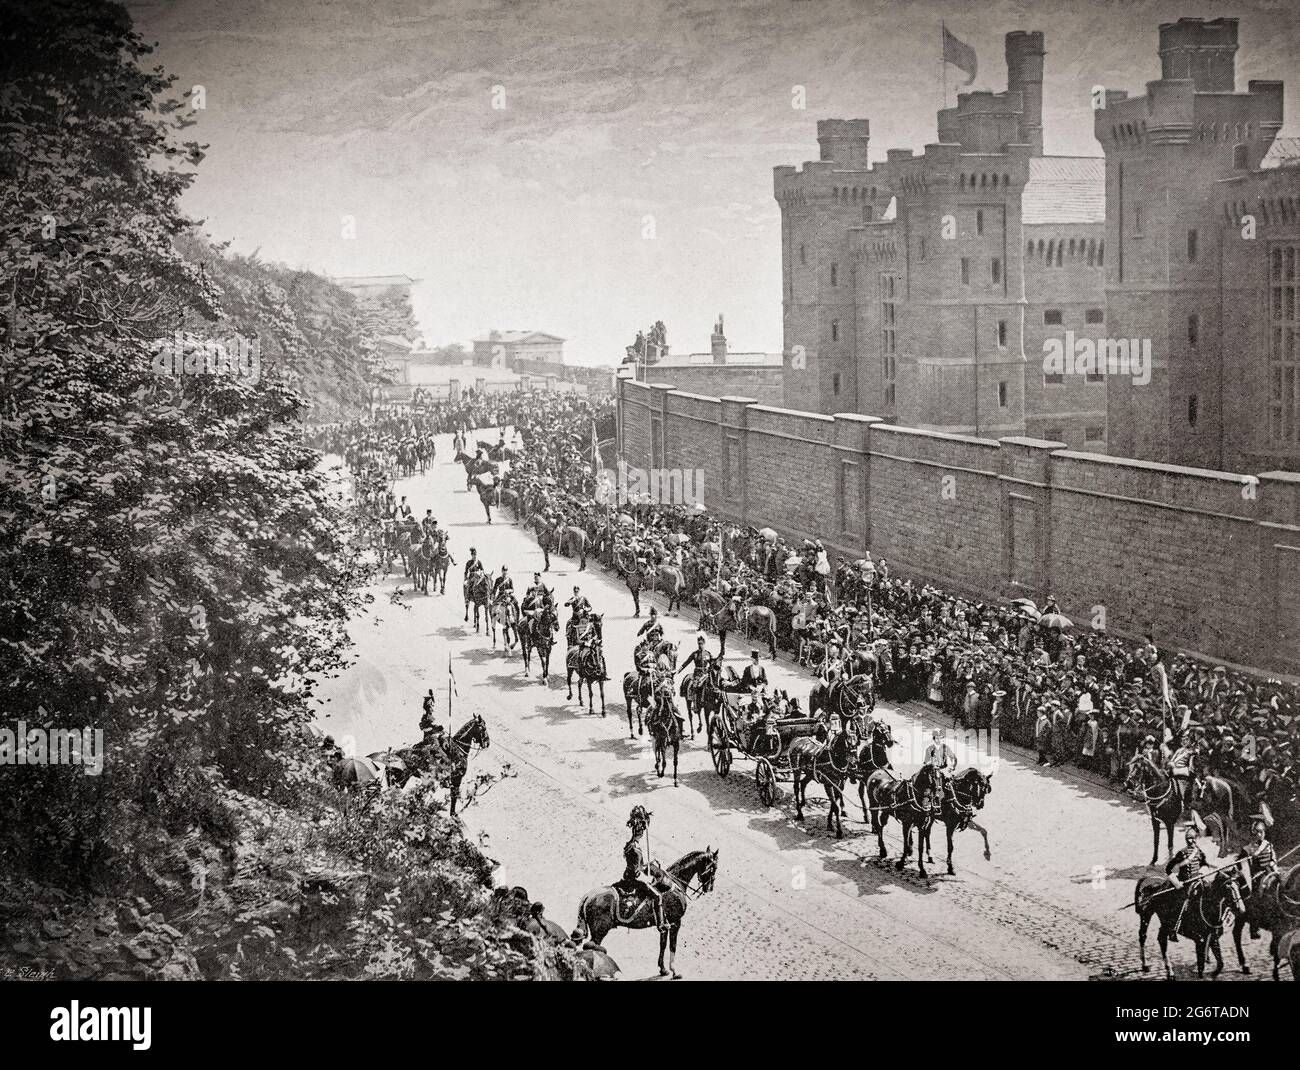 Ein Blick aus dem späten 19. Jahrhundert auf den Commissioner's Walk am Calton-Gefängnis in Regent's Terrace, Edinburgh, Schottland. In der Kutsche mit einer militärischen Eskorte befindet sich der Lord High Commissioner, der den Souverän vertritt. Stockfoto